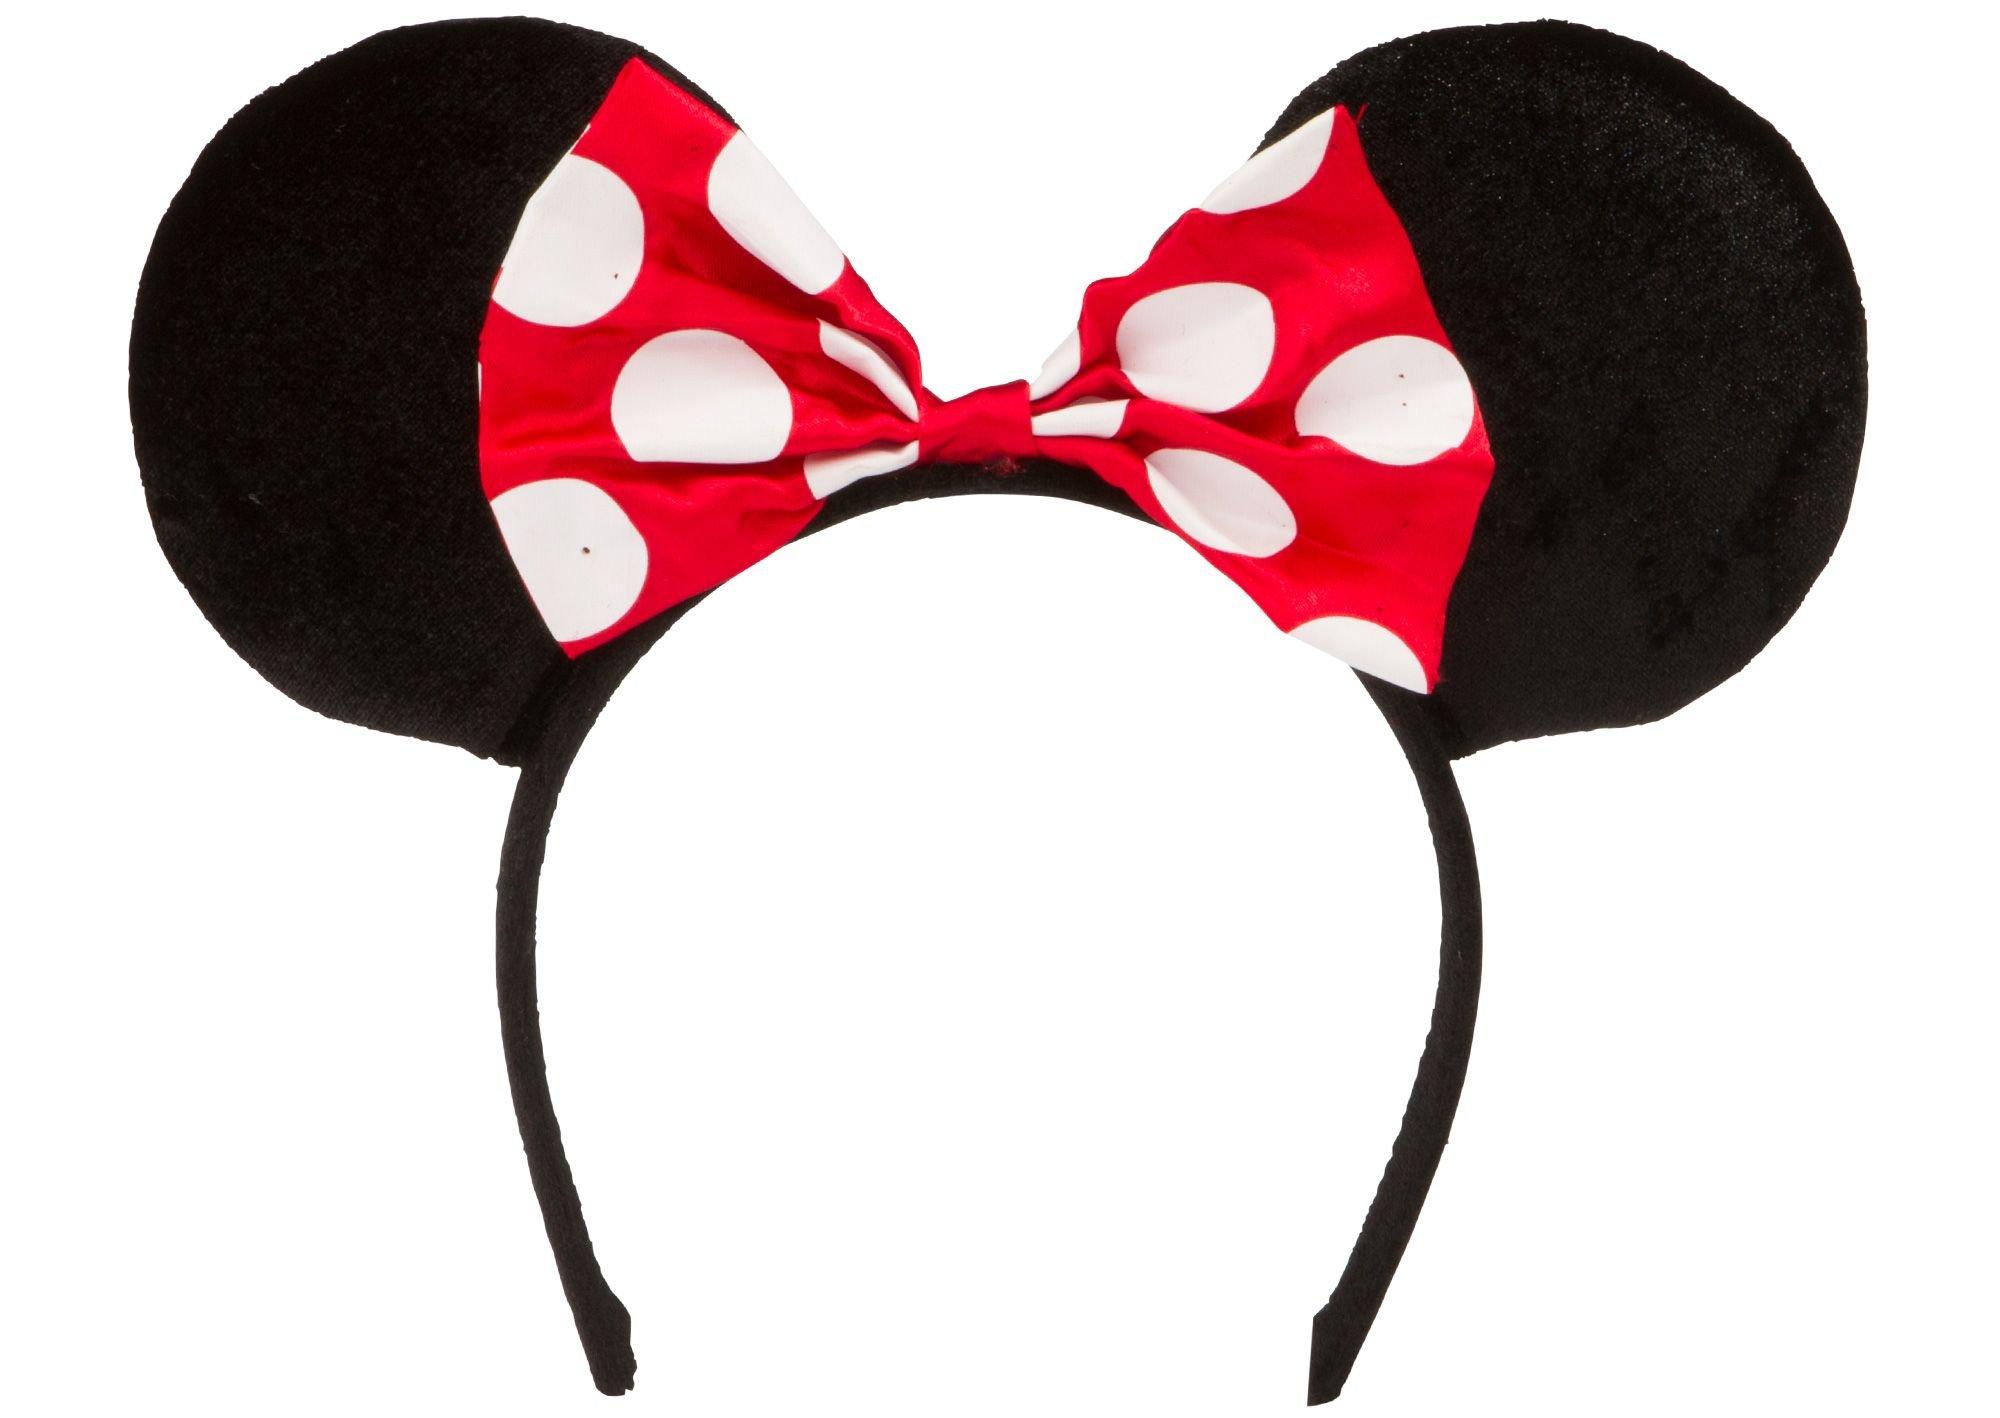 Designer-Inspired Bow Mouse Ears